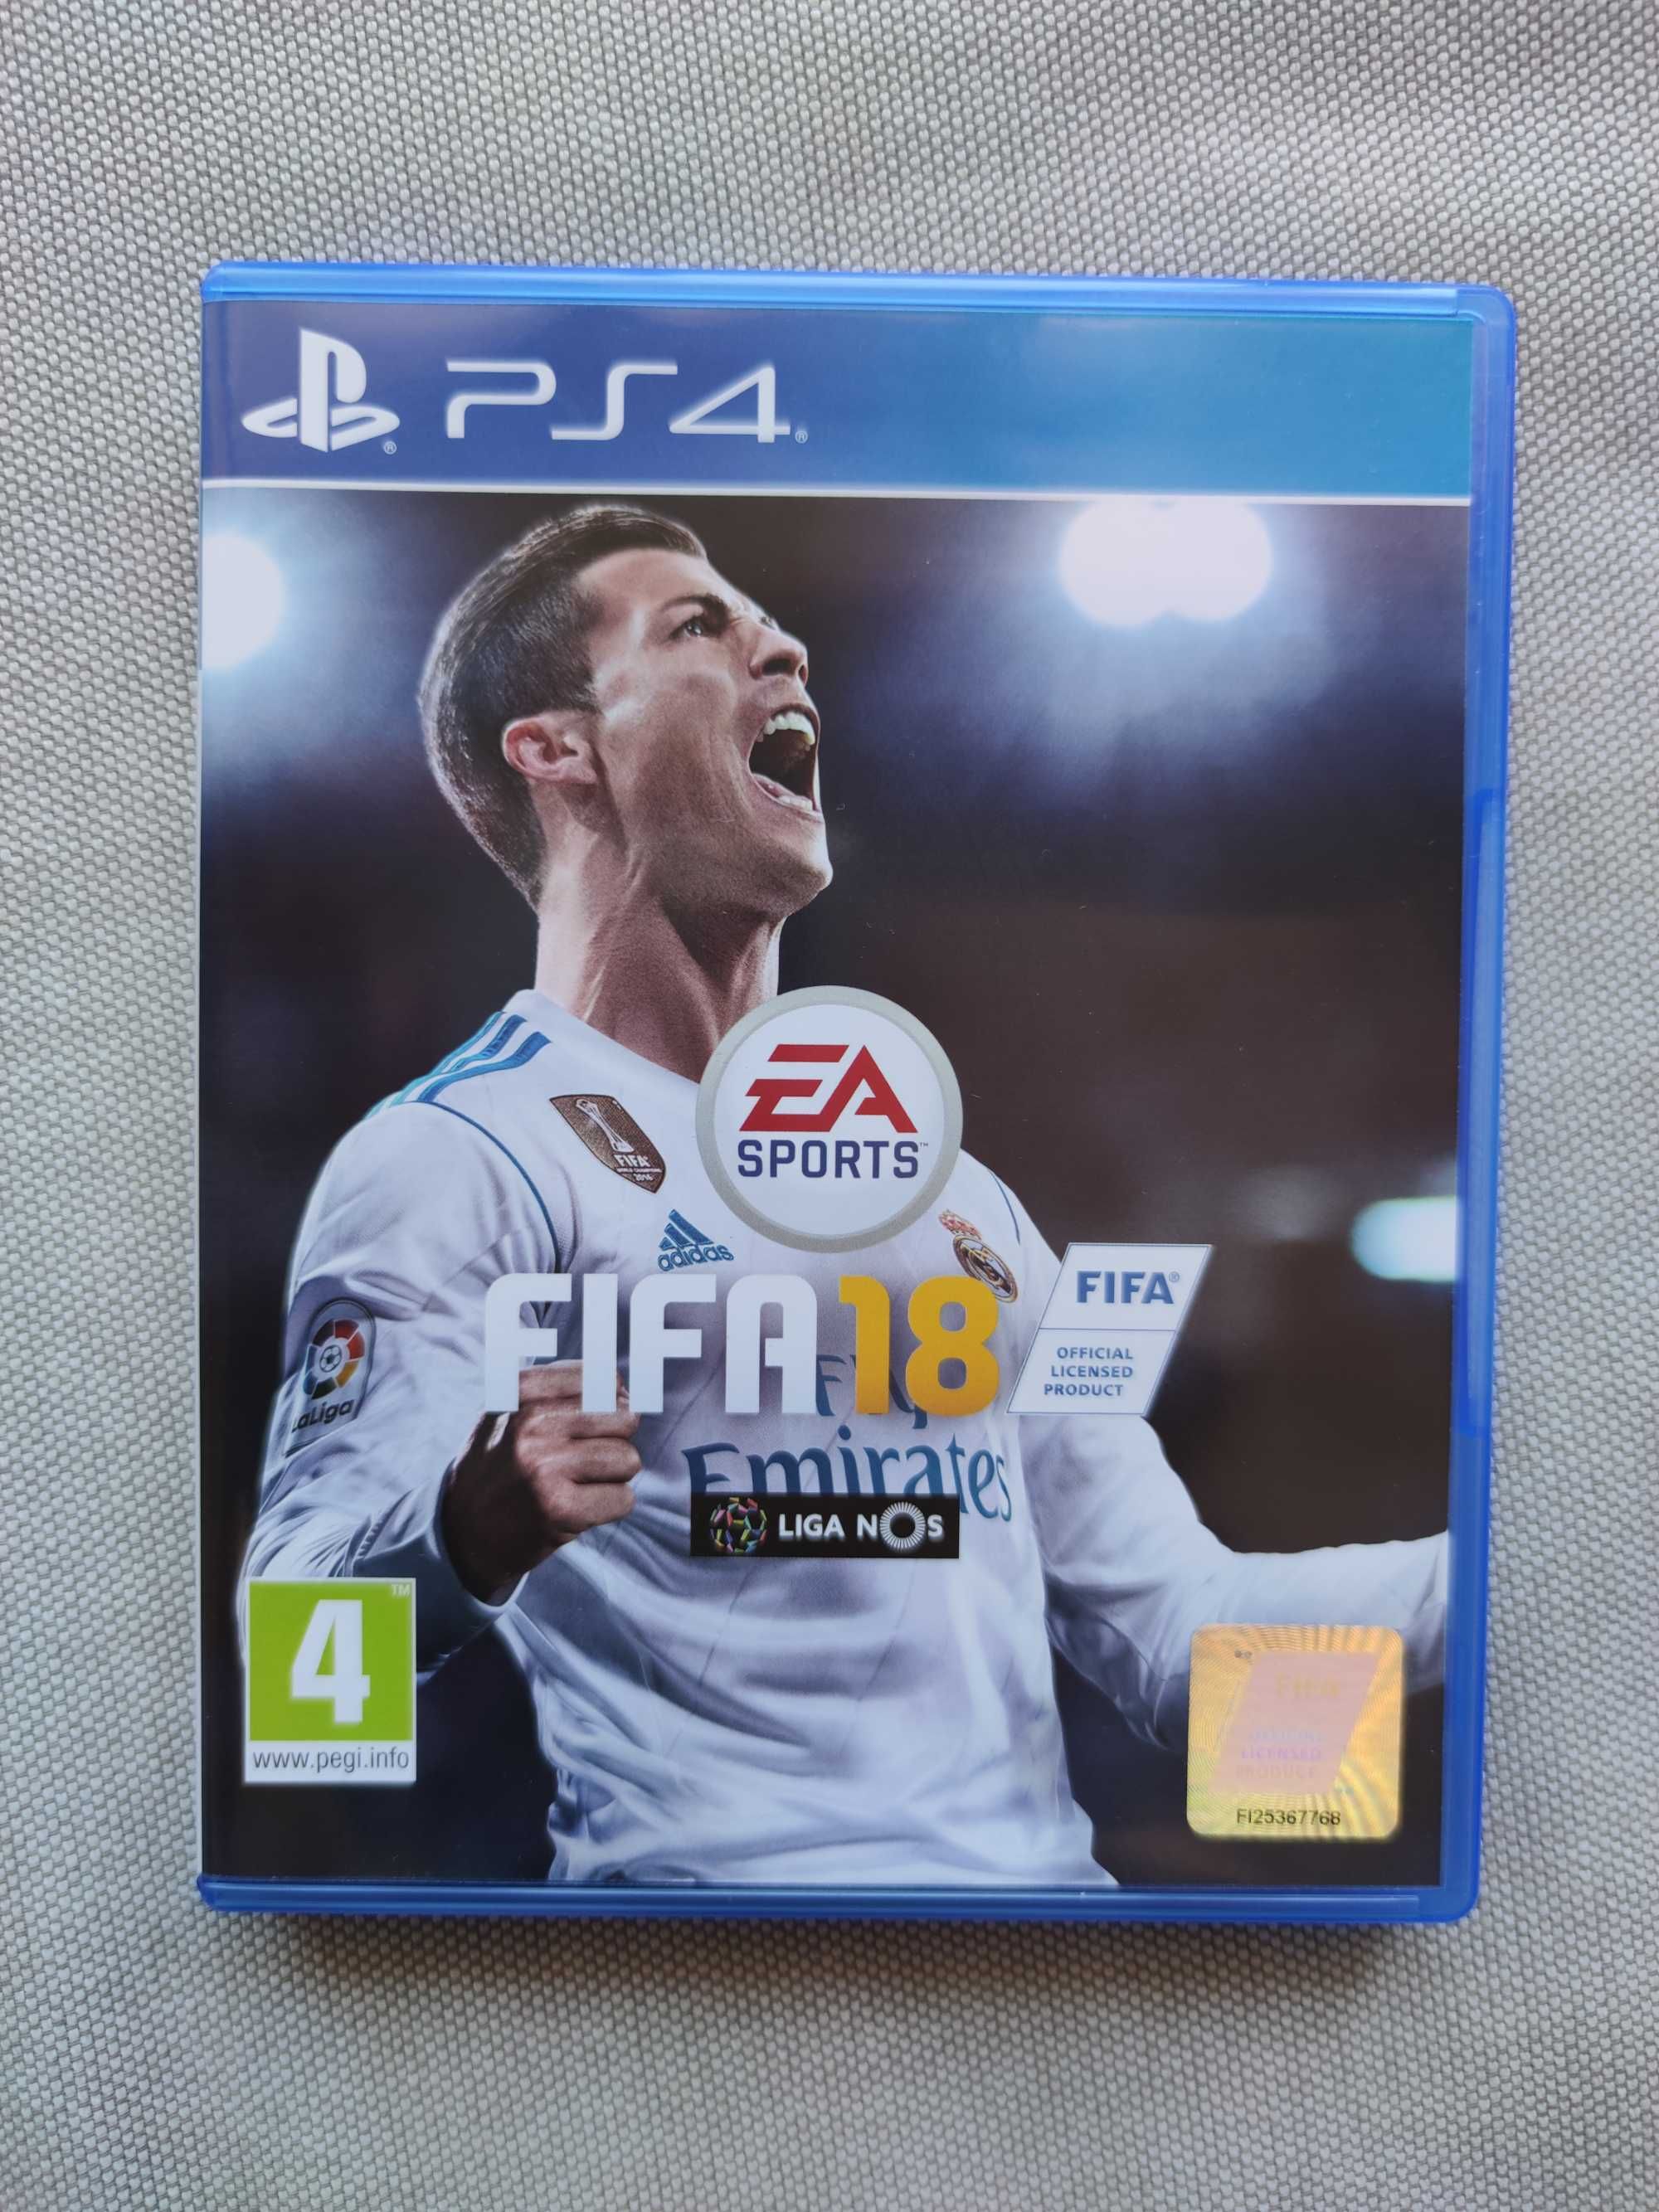 FIFA 18 PS4 jogo na caixa original